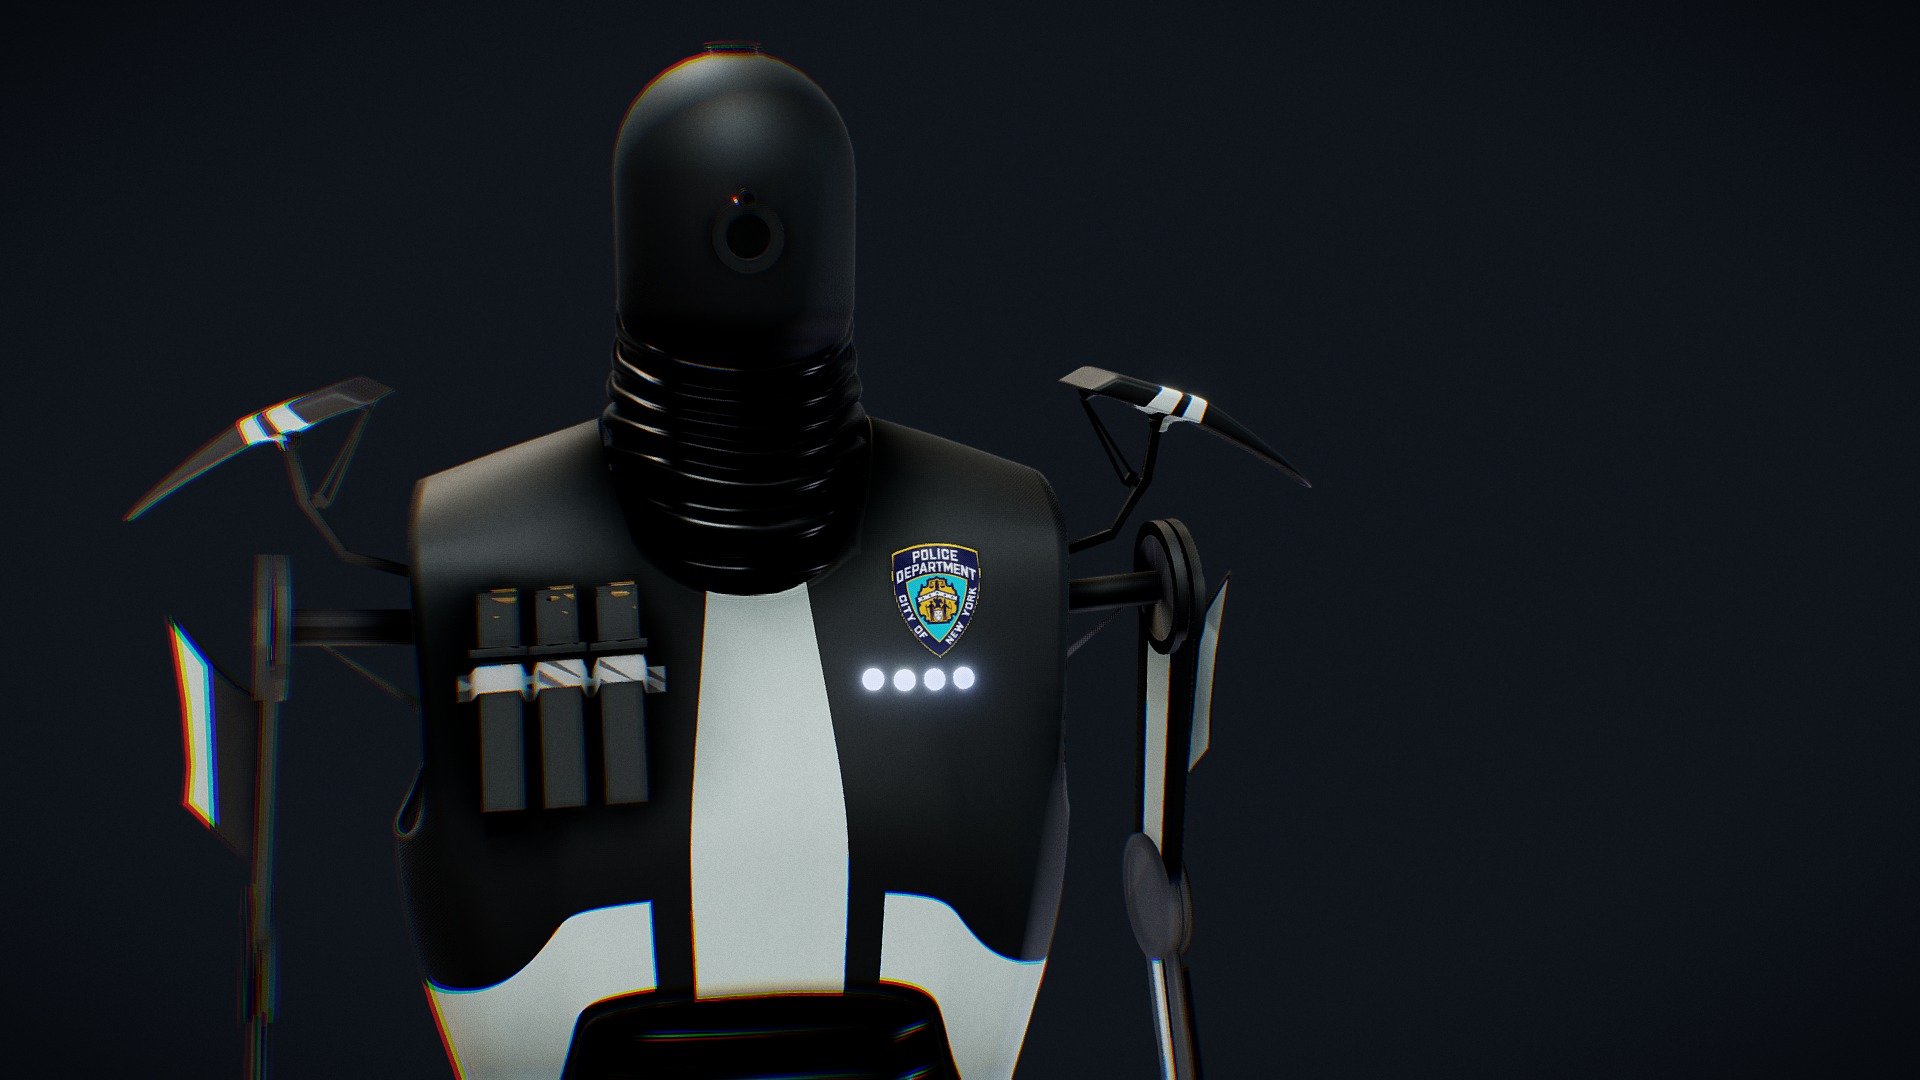 Robot Police Enforcer

Original Design

Made in Blender - Robot Sci Fi Police Enforcer - Buy Royalty Free 3D model by AirStudios (@sebbe613) 3d model